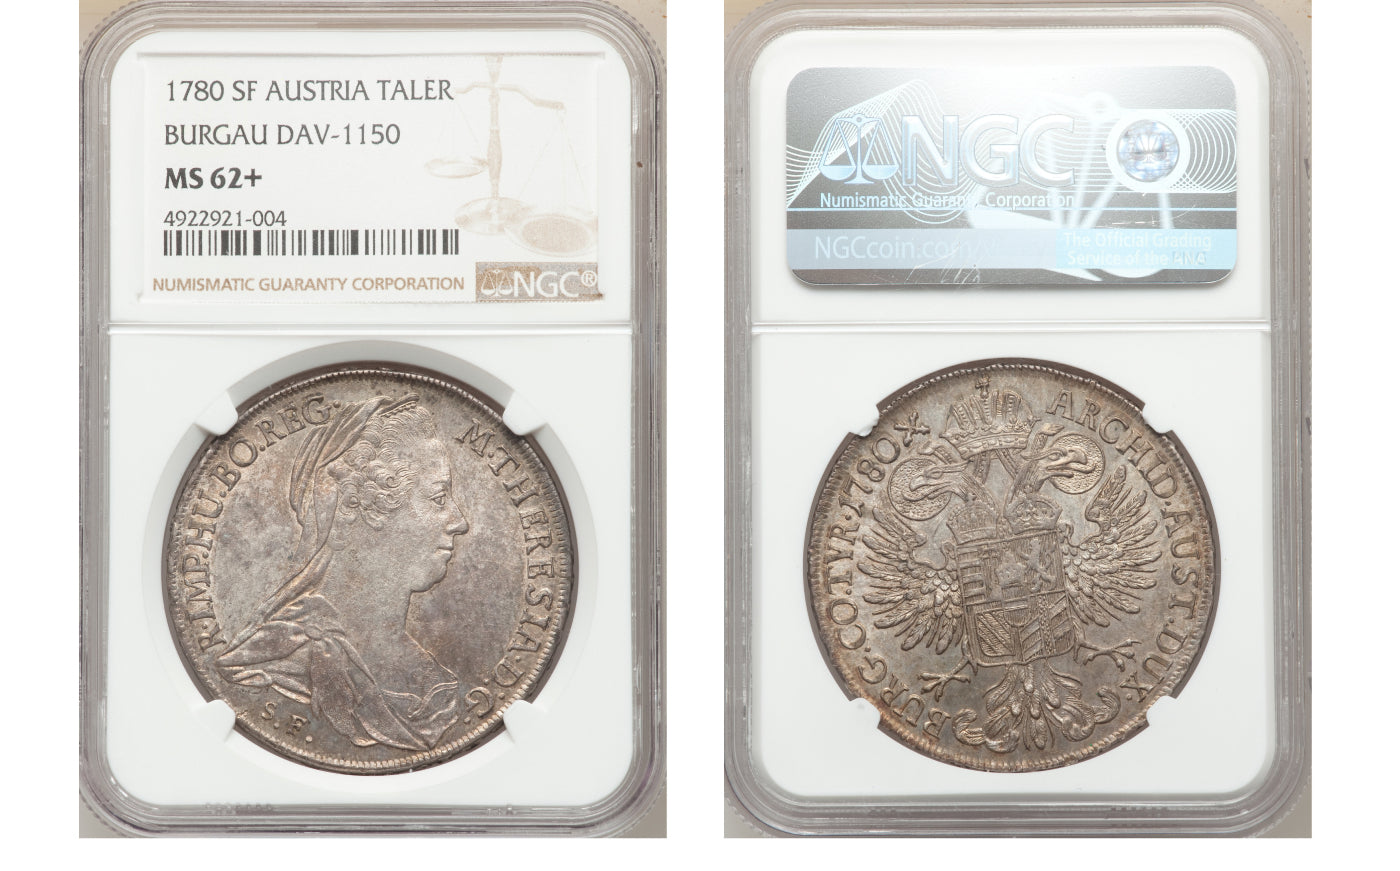 オーストリア帝国の実質的な女帝マリア・テレジアの1ターラー銀貨とは 